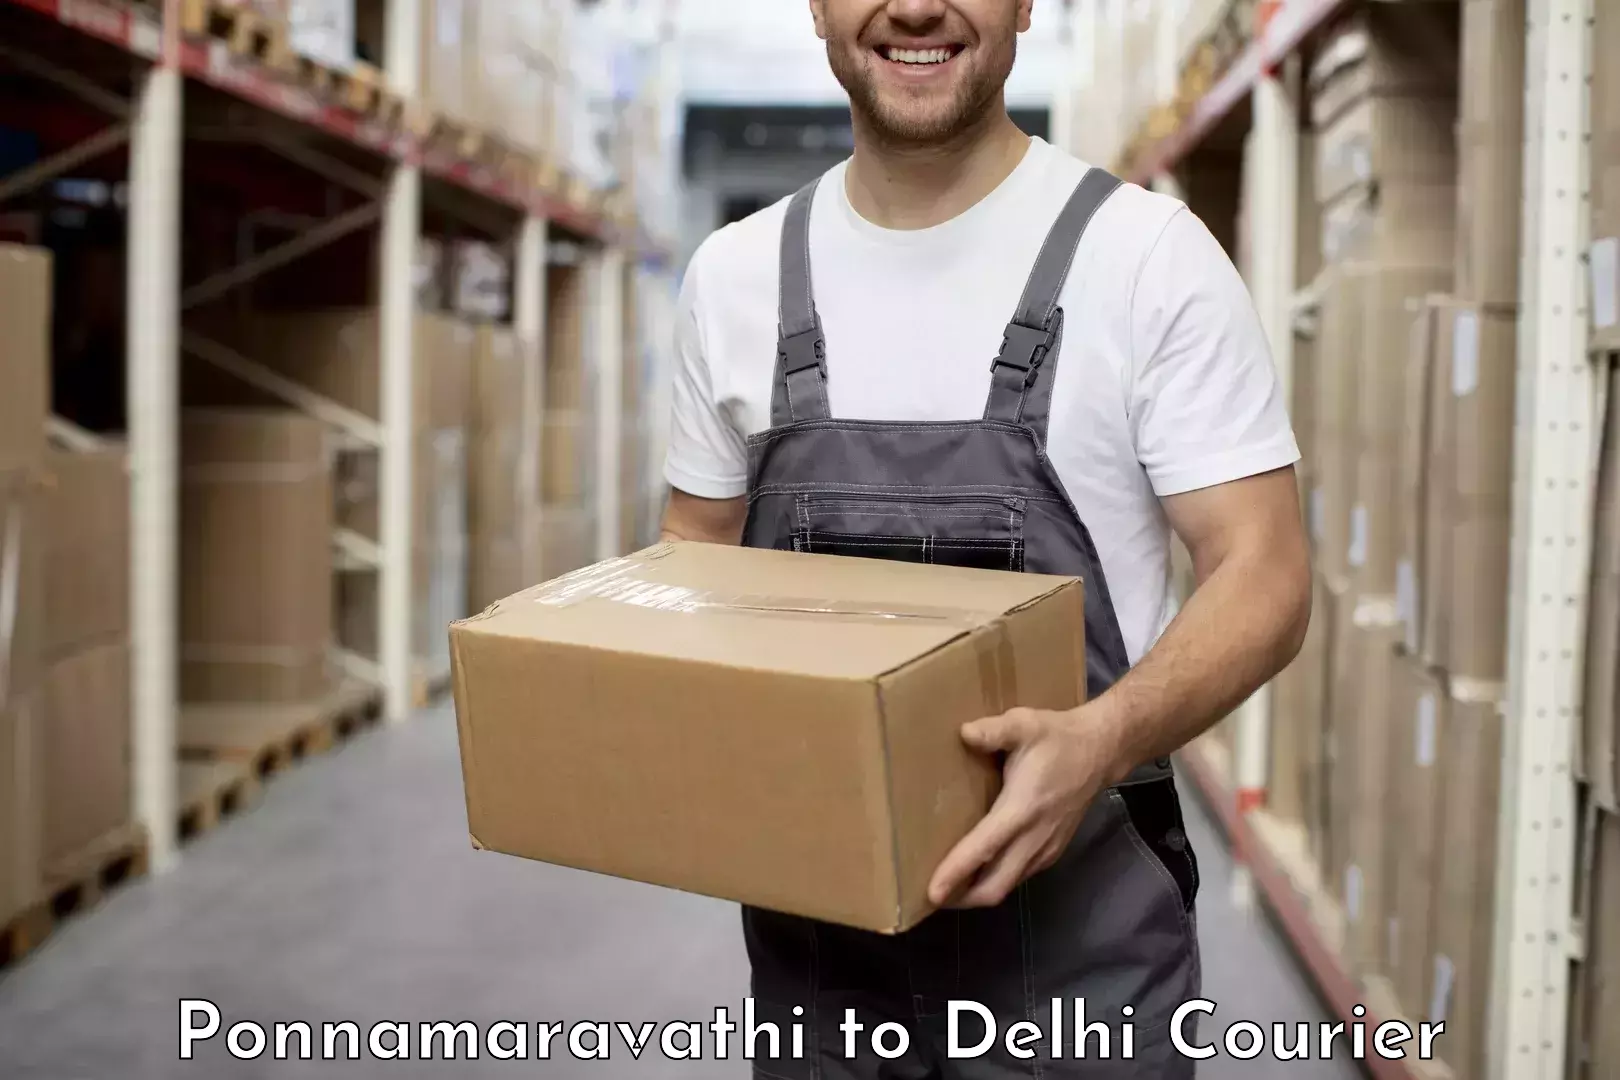 Cash on delivery service Ponnamaravathi to Jawaharlal Nehru University New Delhi